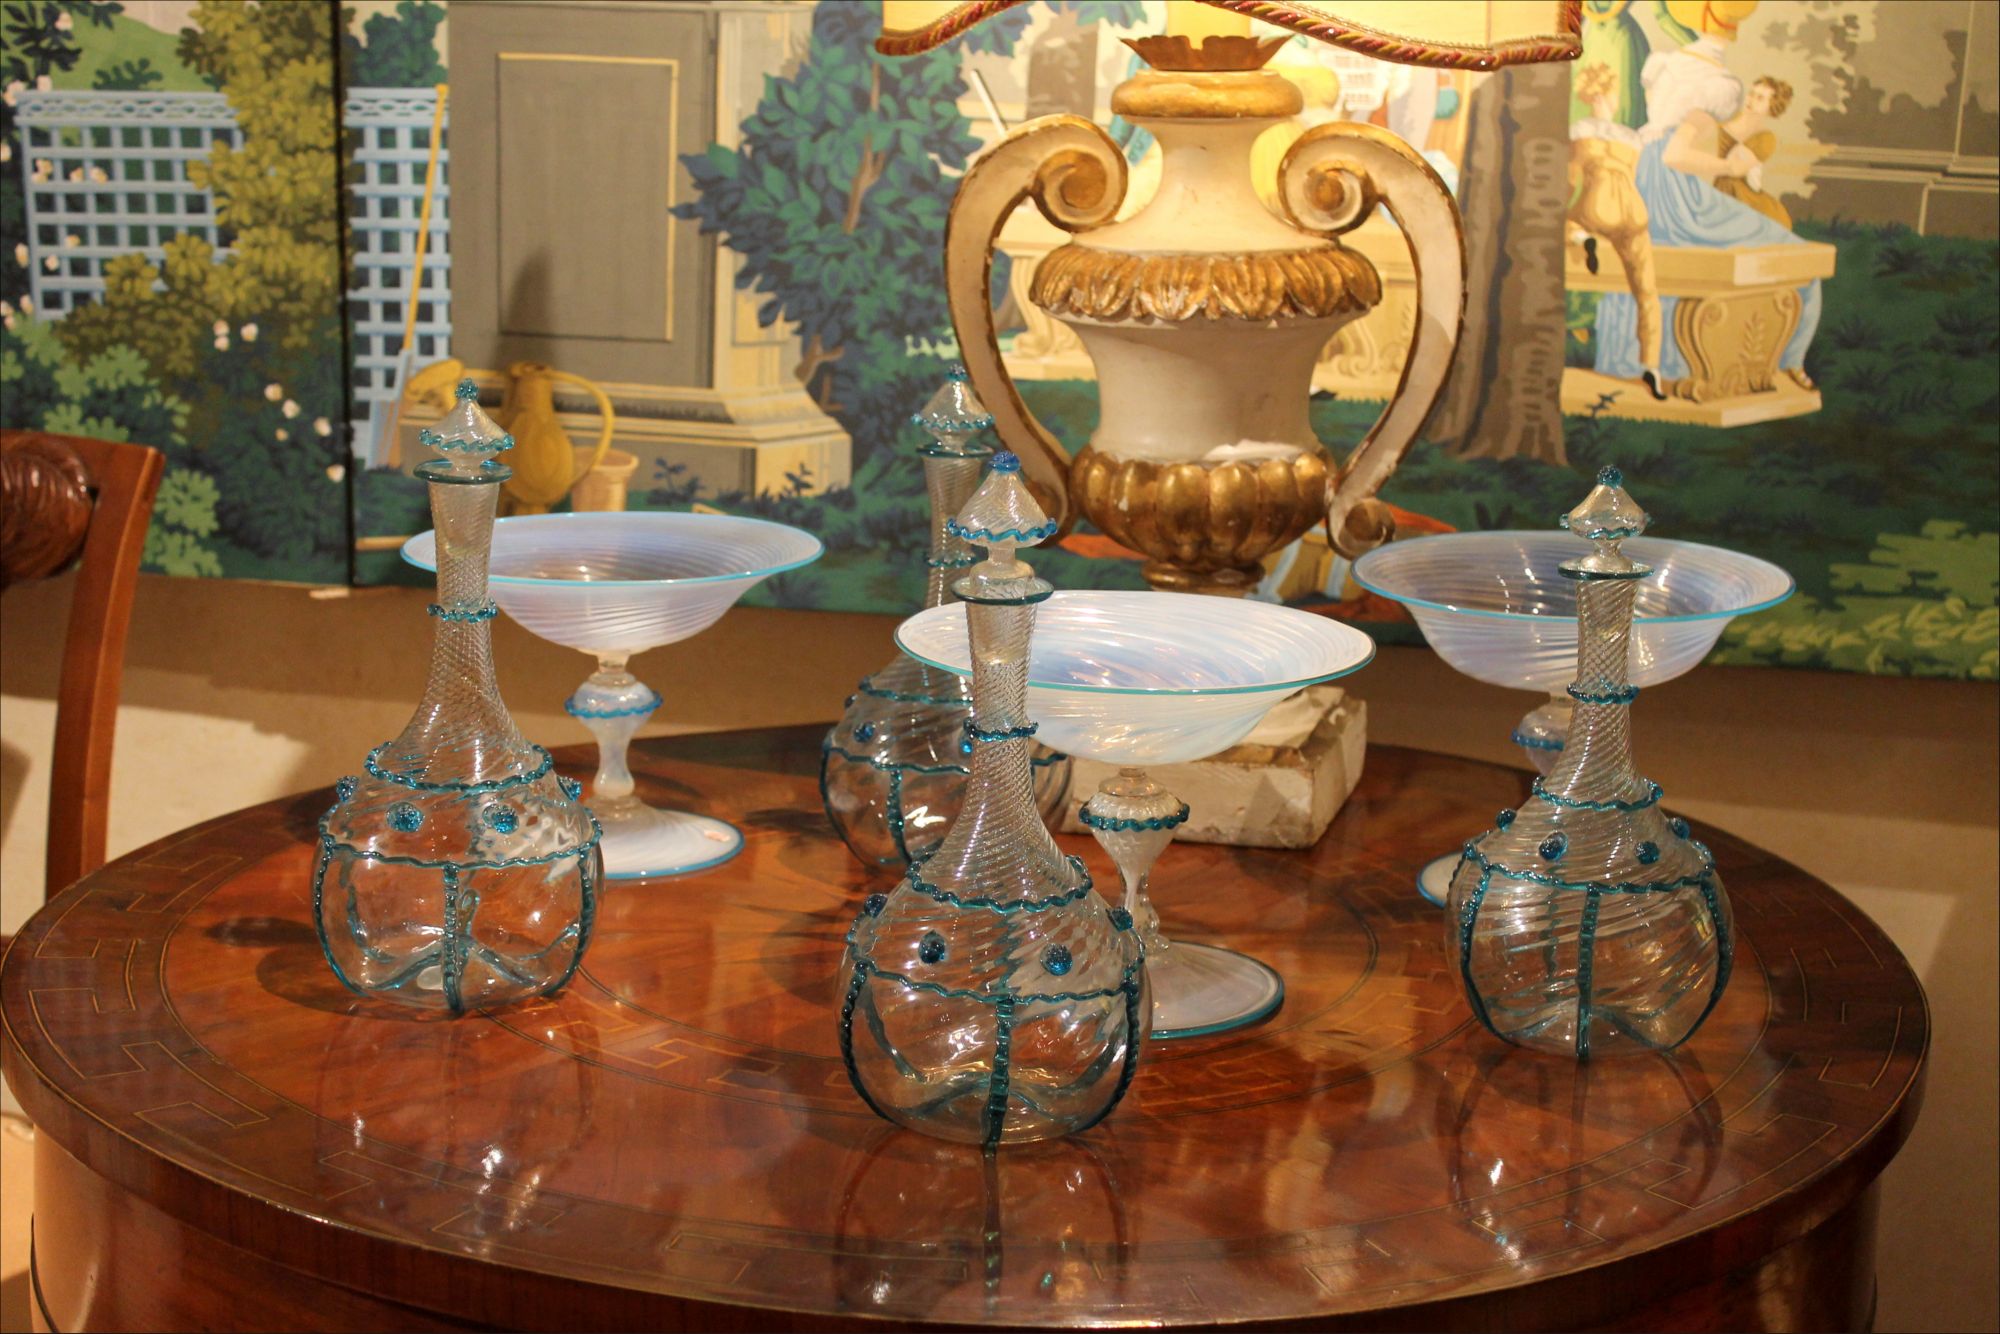 https://artorigo.com/ao_products/3803/l/furniture-glass-objects-18th-century-1700-1799-rococo-murano-galleria-antonio-esposito-di-chiara-esposito-17119.JPG